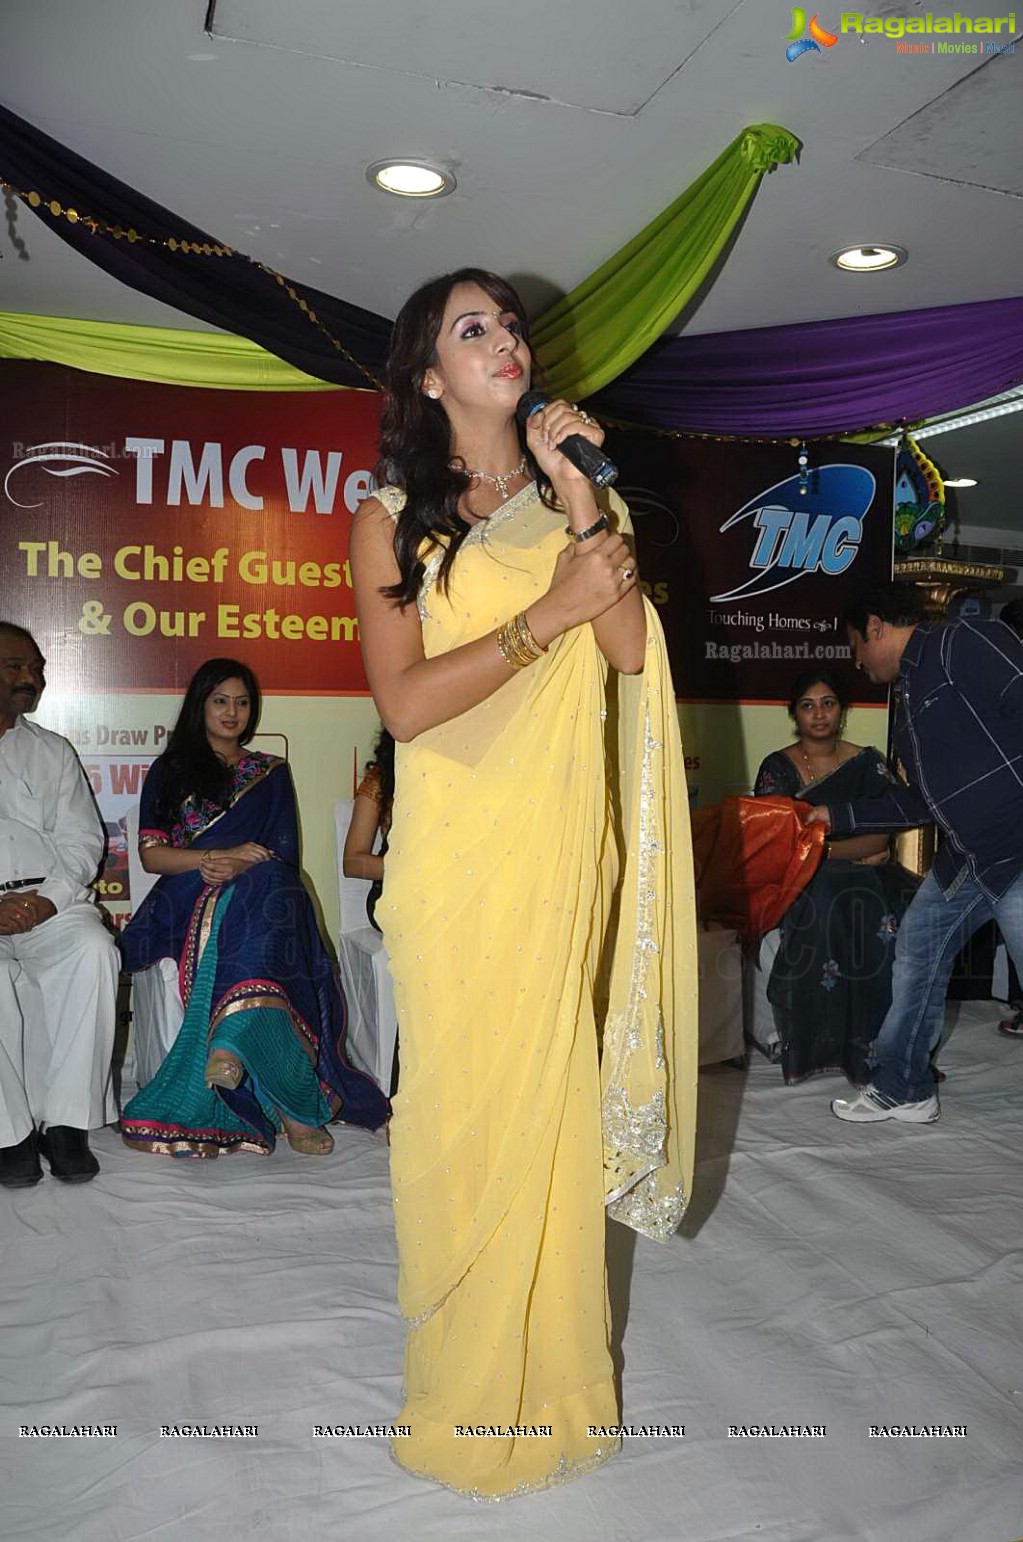 TMC Dhanteras 2012 Special Draw, Hyderabad